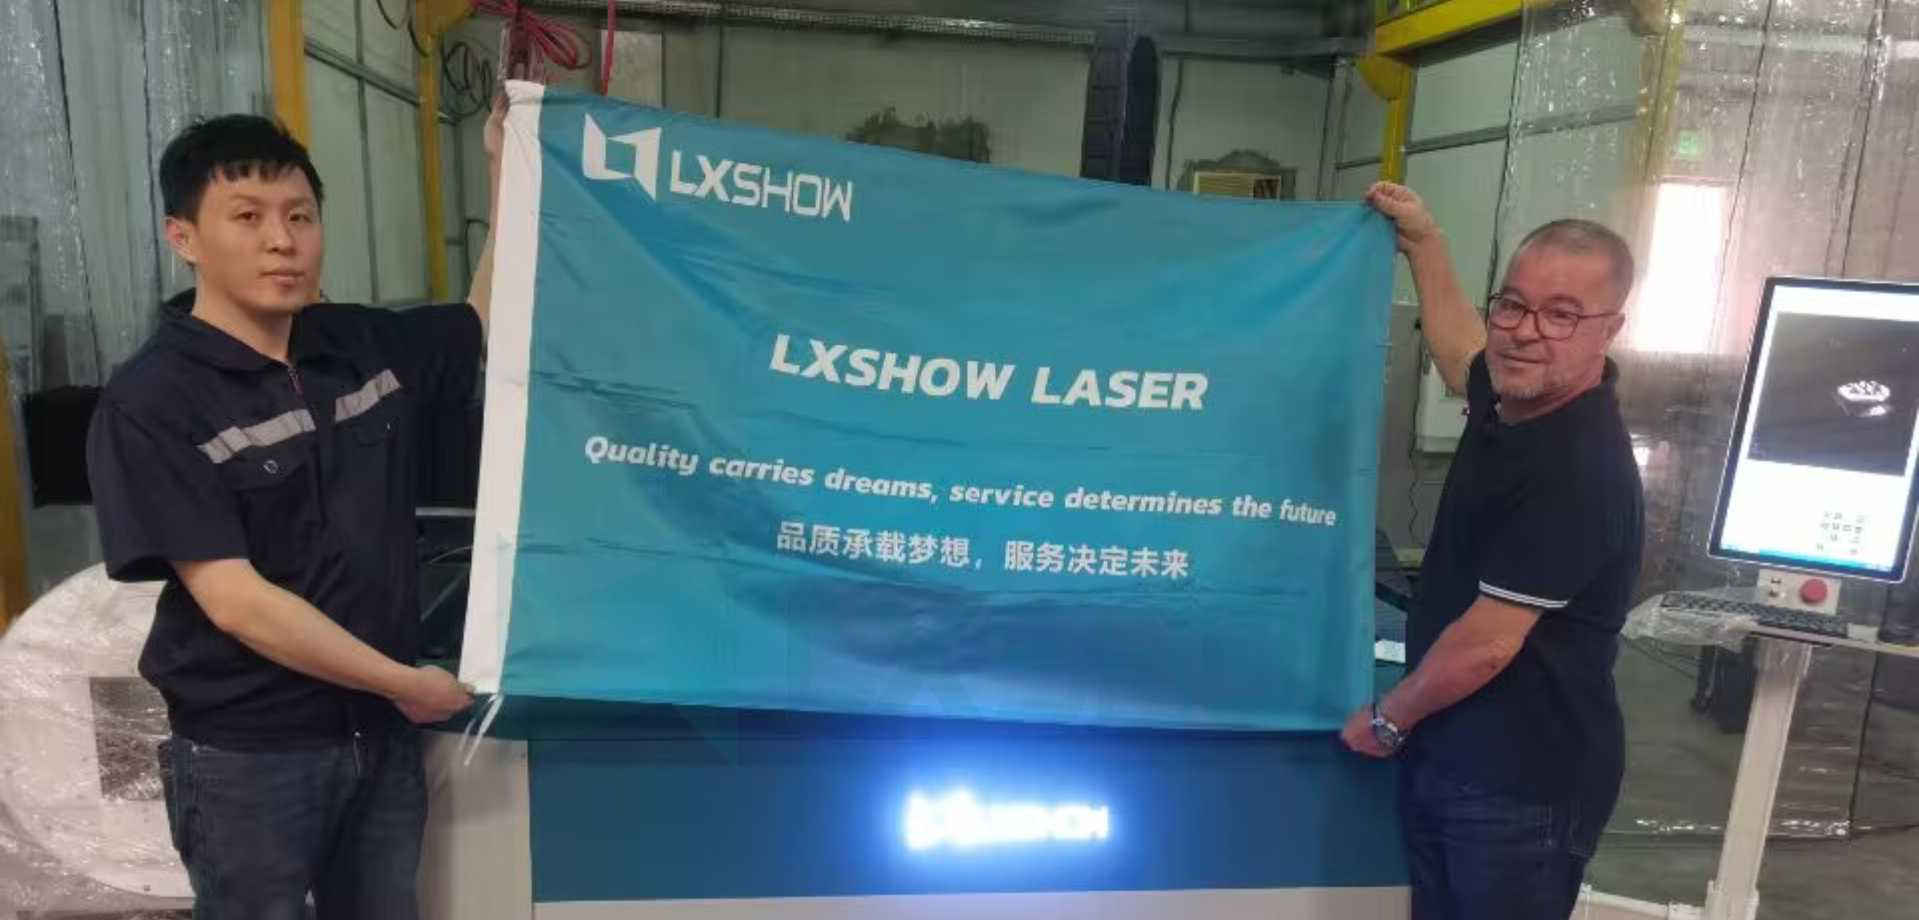 Servei postvenda LXSHOW a Qatar amb la seva màquina talladora làser de metall